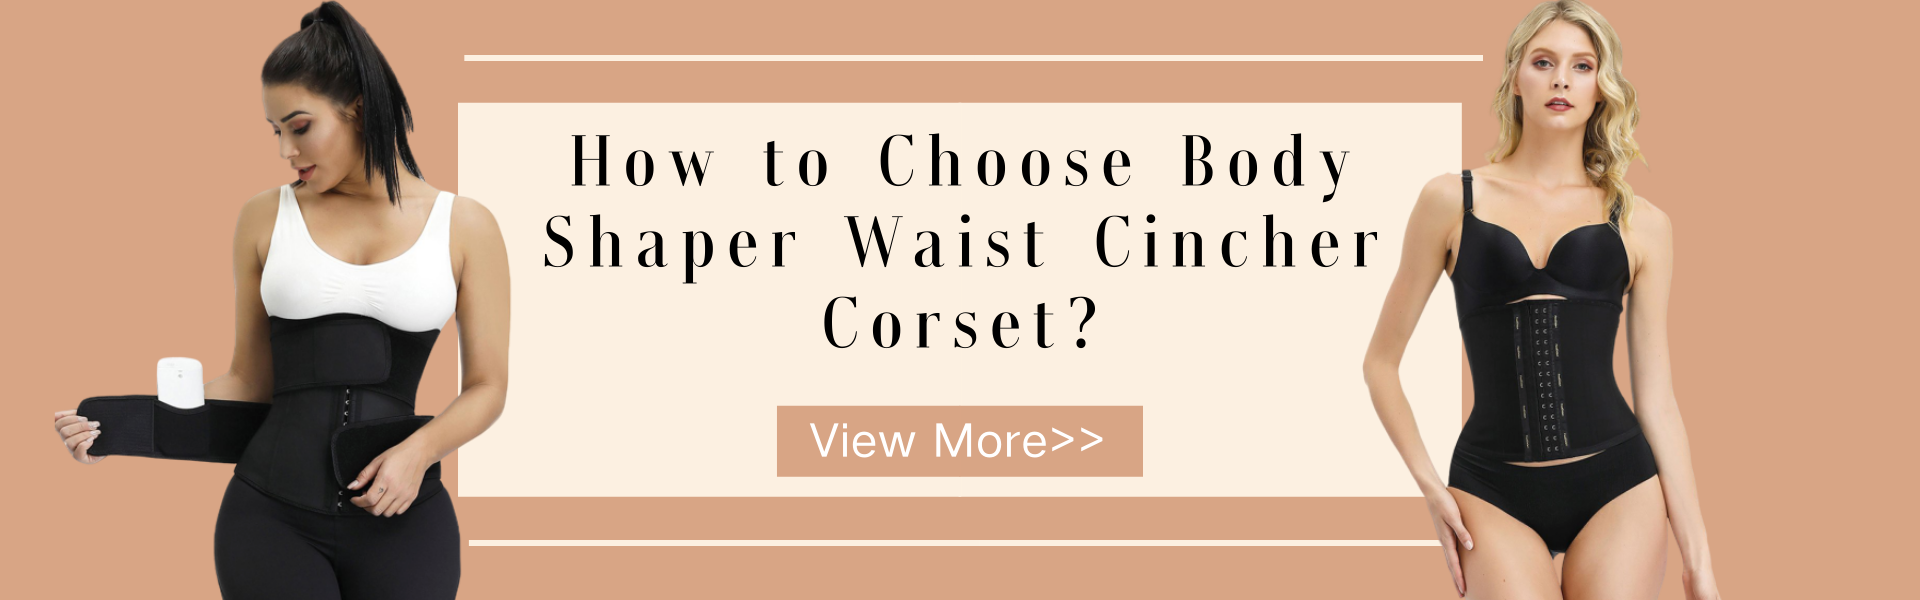 How to Choose Body Shaper Waist Cincher Corset?